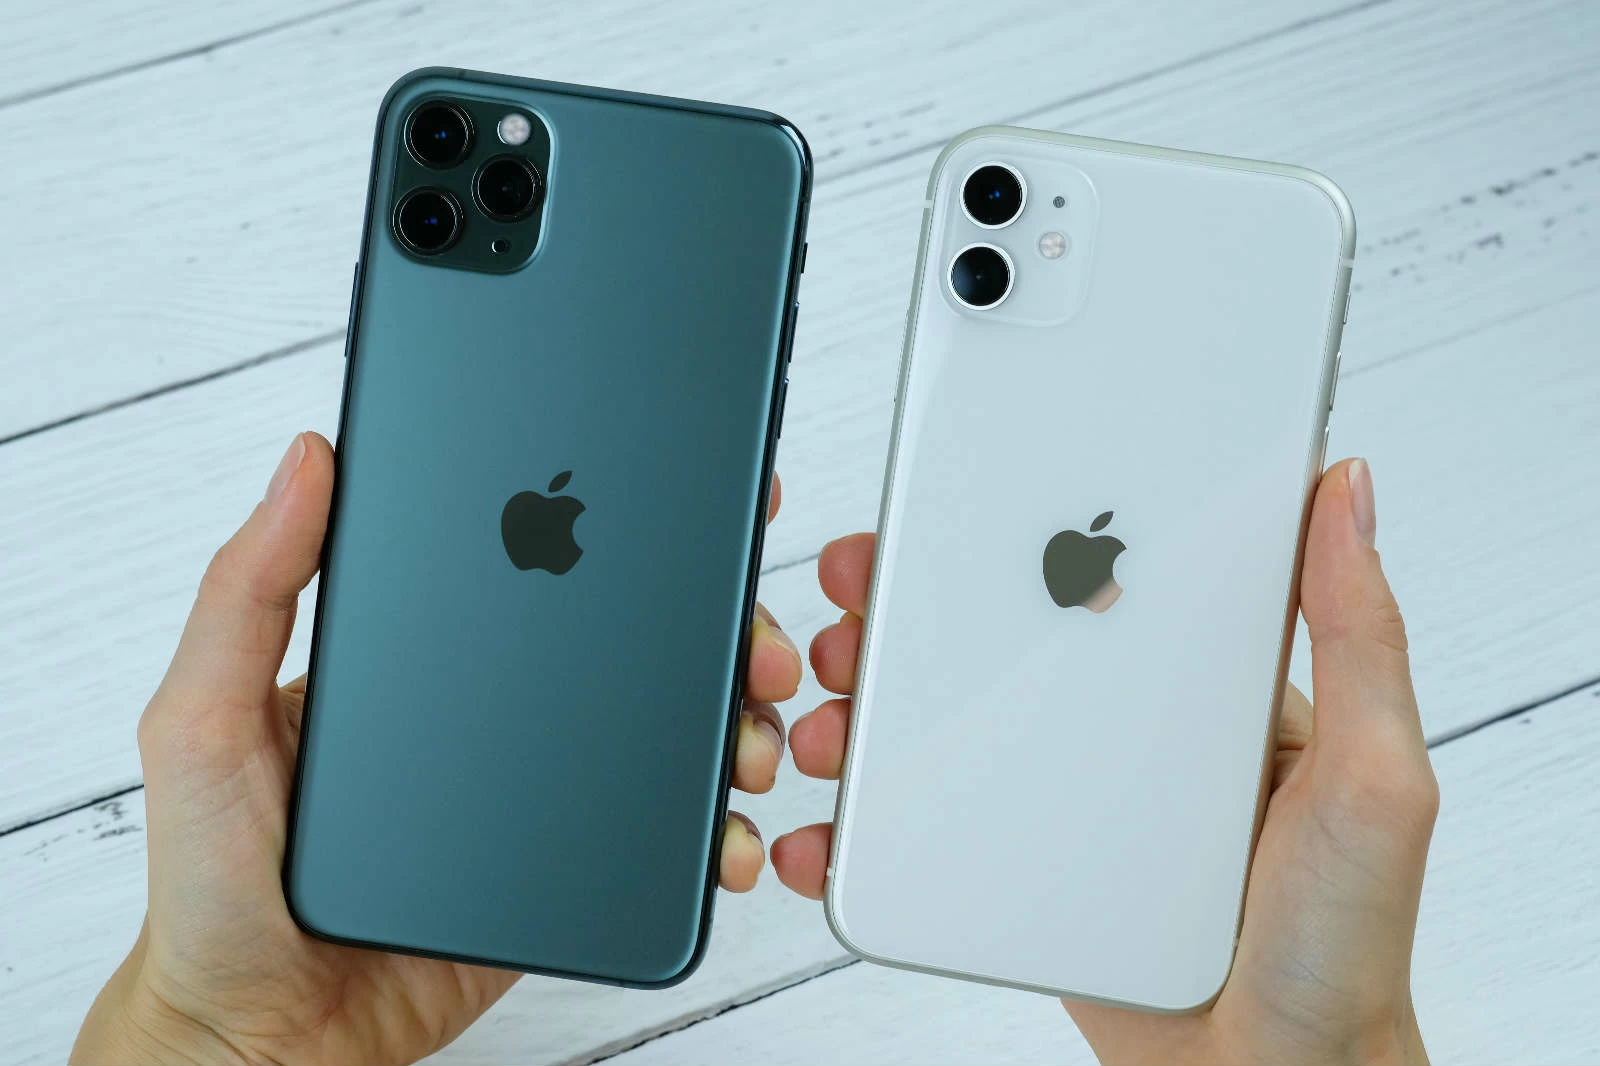 So sánh iPhone 11 và iPhone 11 Pro